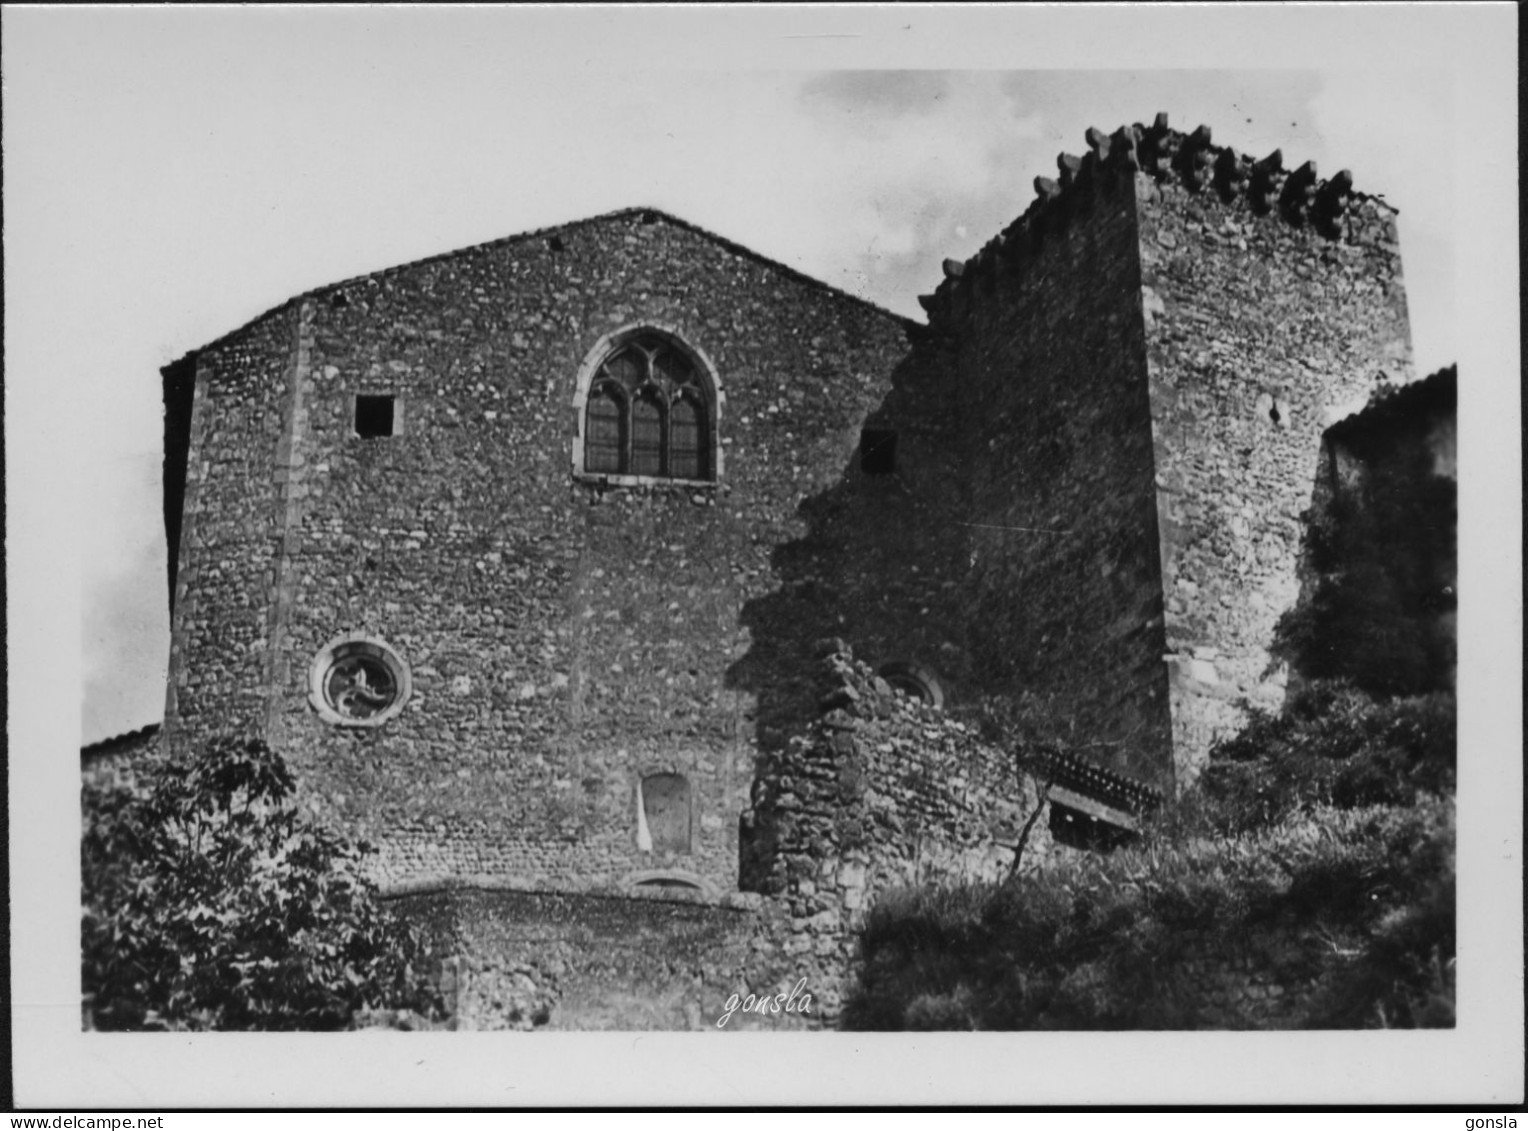 CITÉ DE PEROUGES 1950 "Village Médiéval" Bloc originale de 10 petites photos